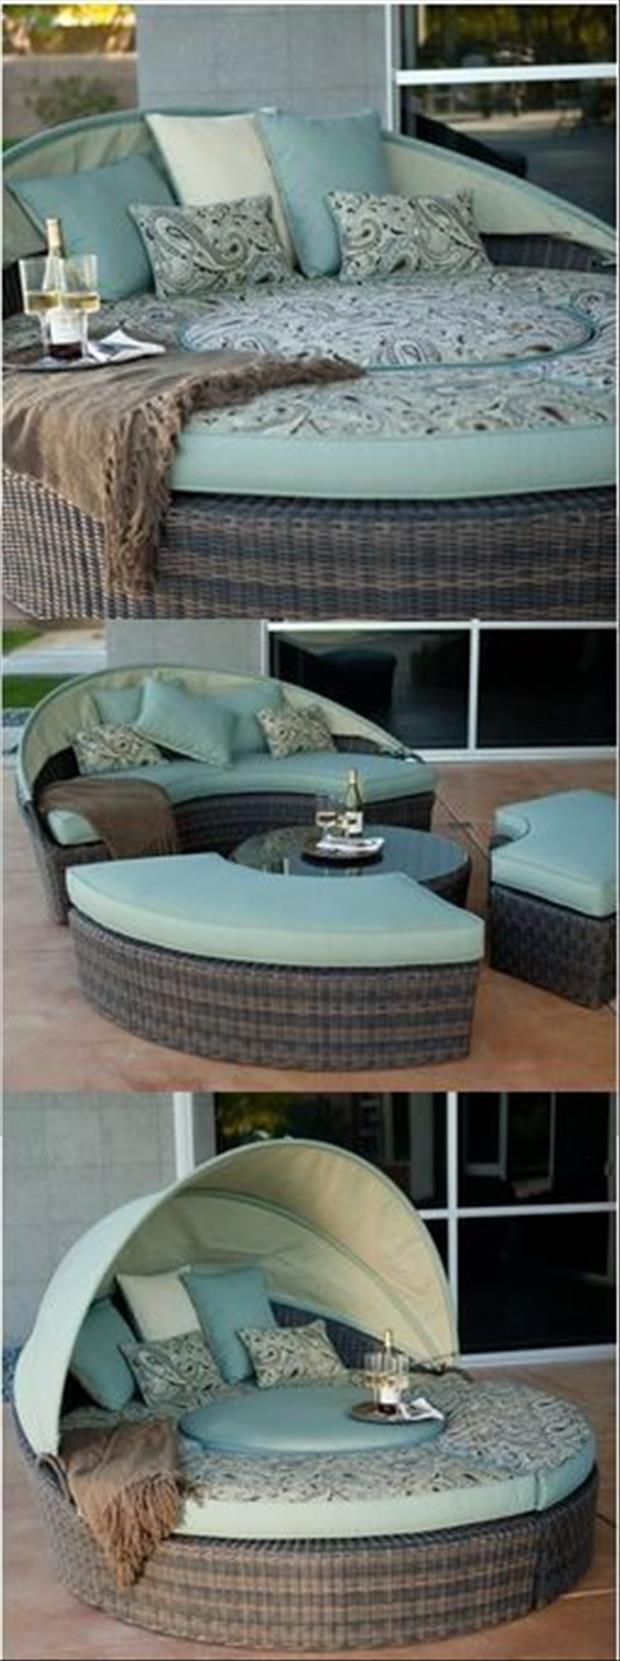 backyard-lounge-chairs11